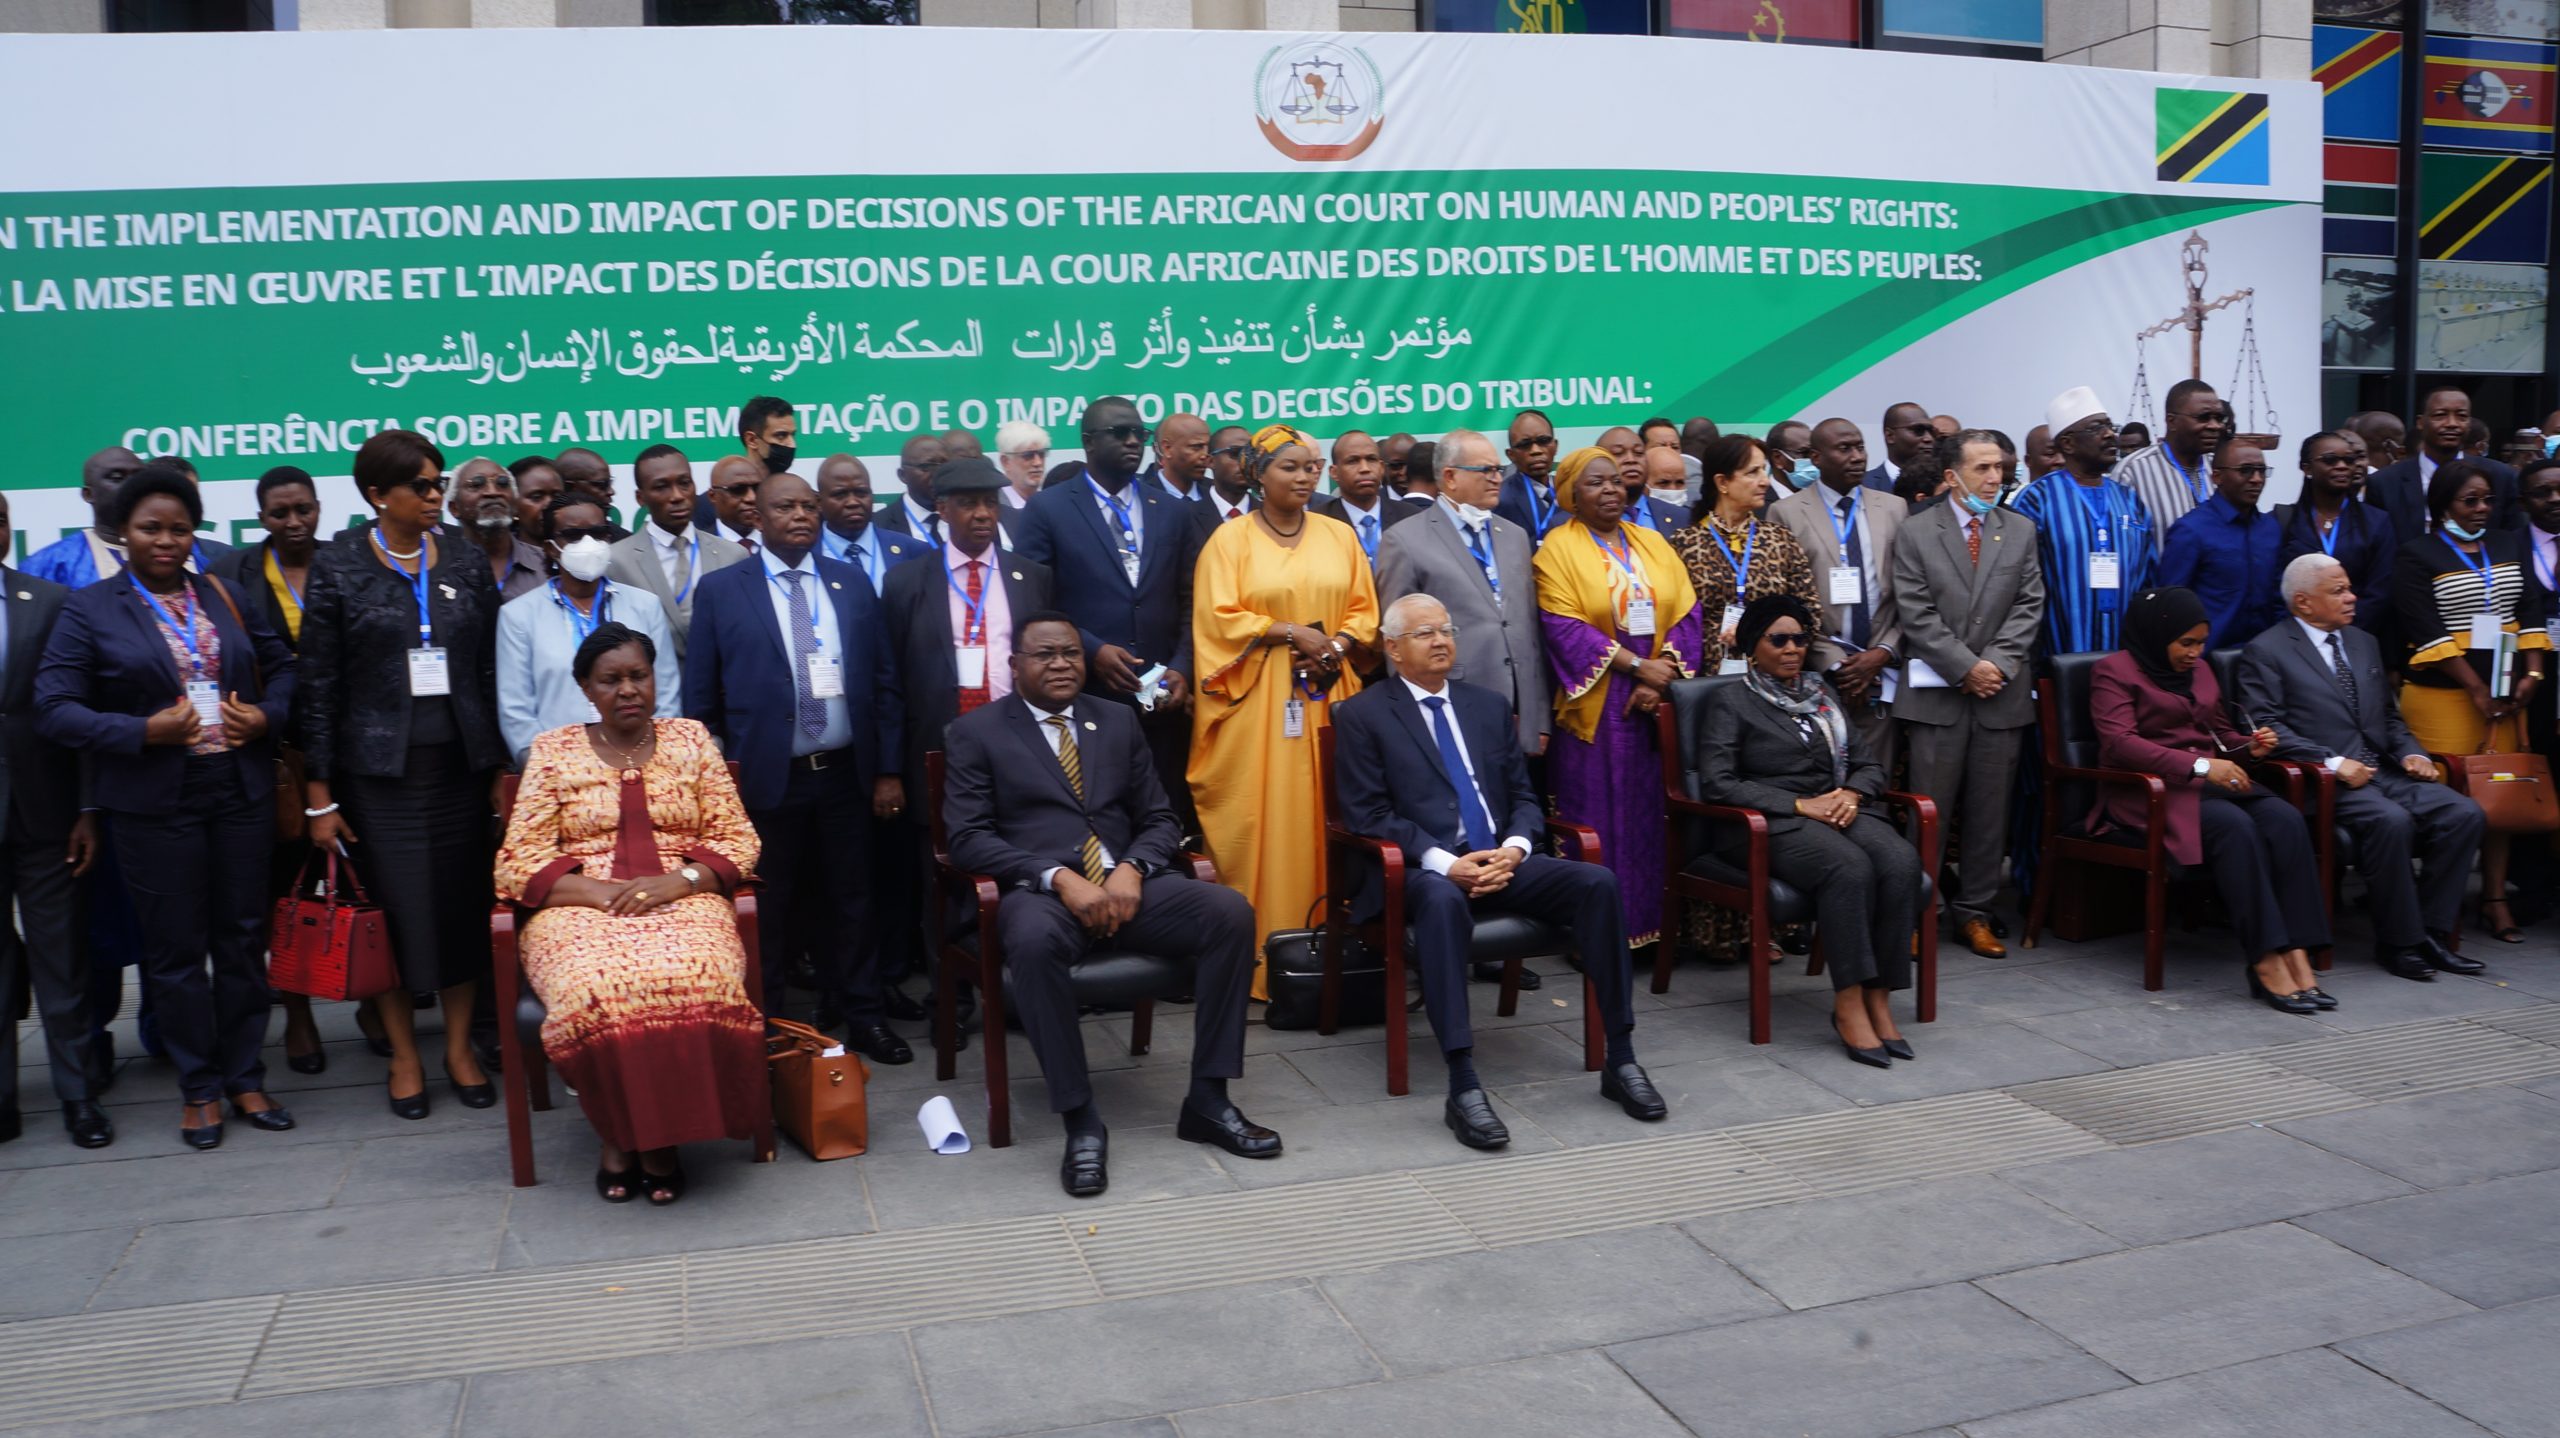 المؤتمر الدولي بشأن تنفيذ وتأثير قرارات المحكمة الأفريقية